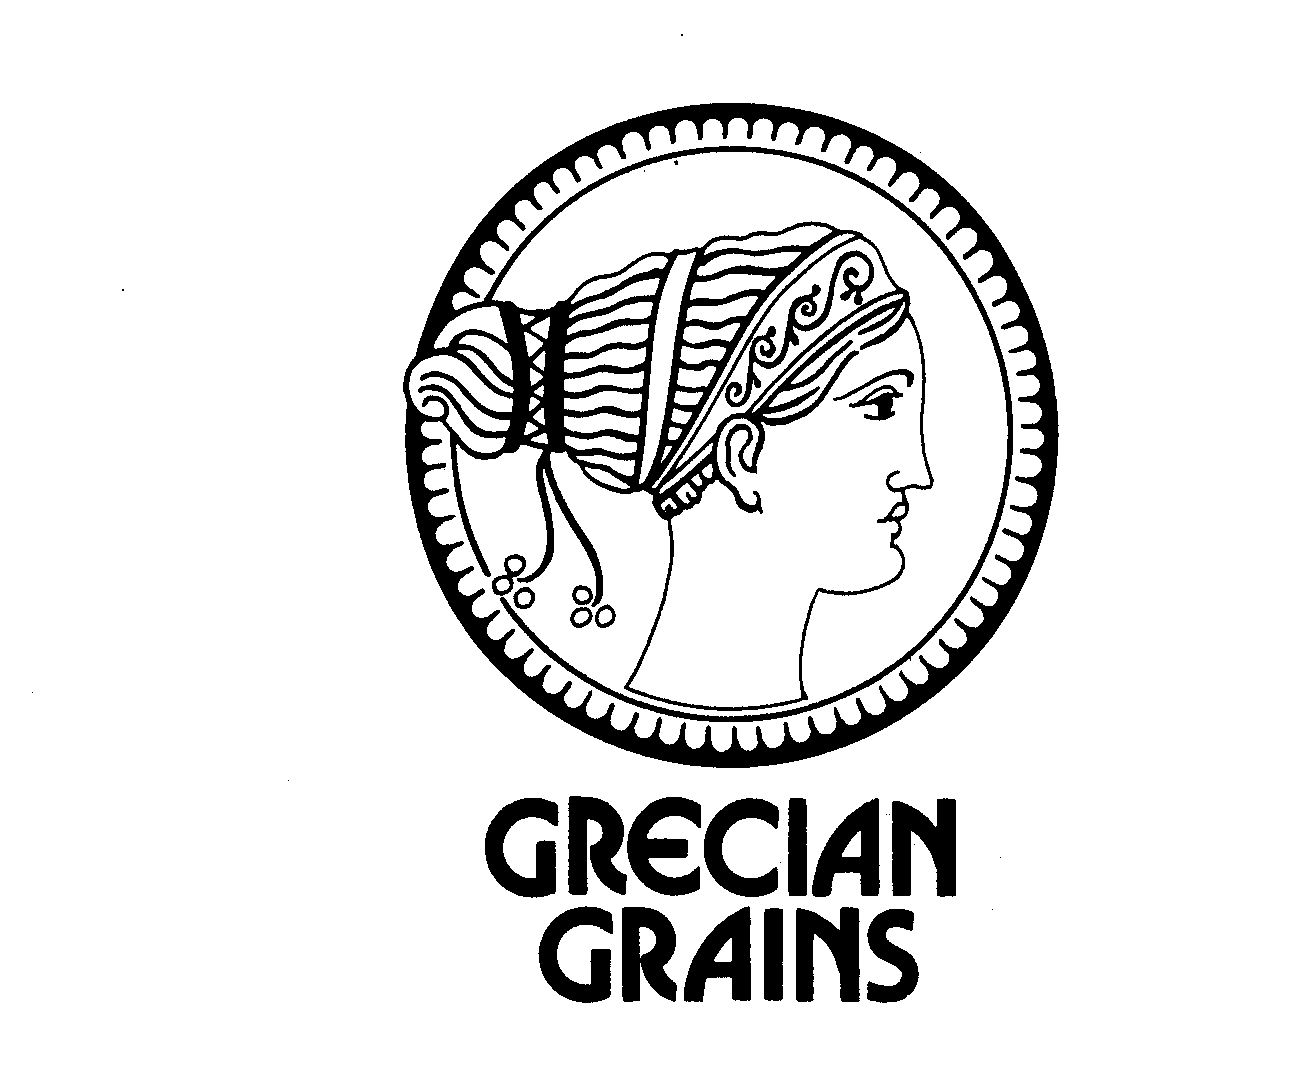  GRECIAN GRAINS